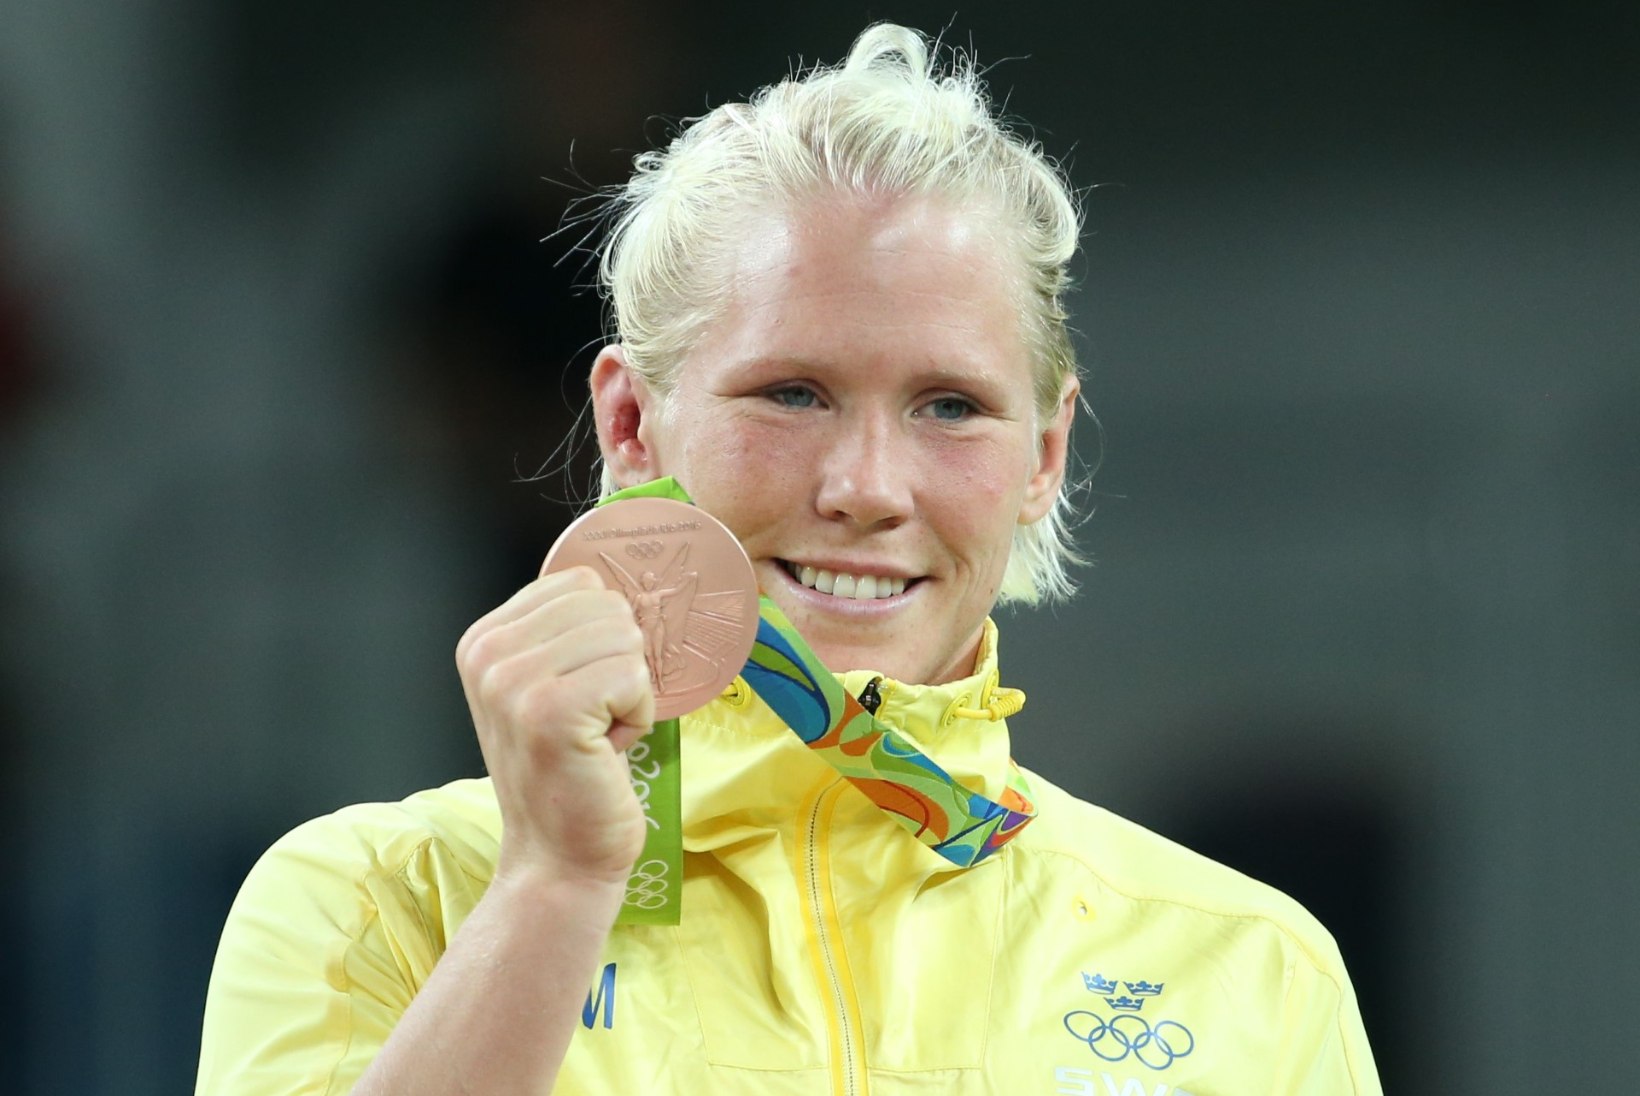 Rootslannast maailmameistrile määrati pikk võistluskeeld